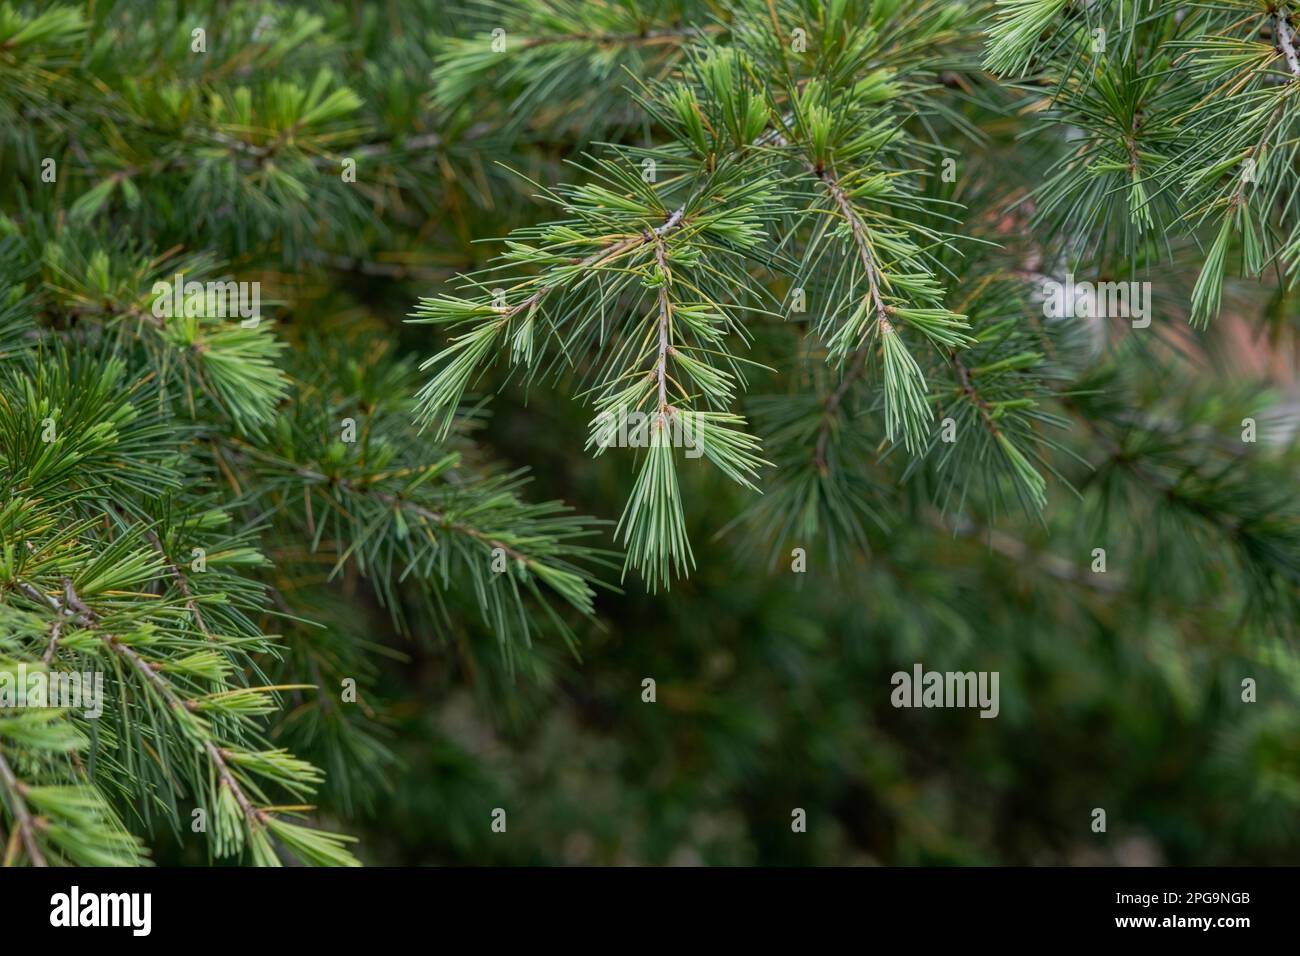 Deodar cedar (Cedrus deodara) green foliage Stock Photo